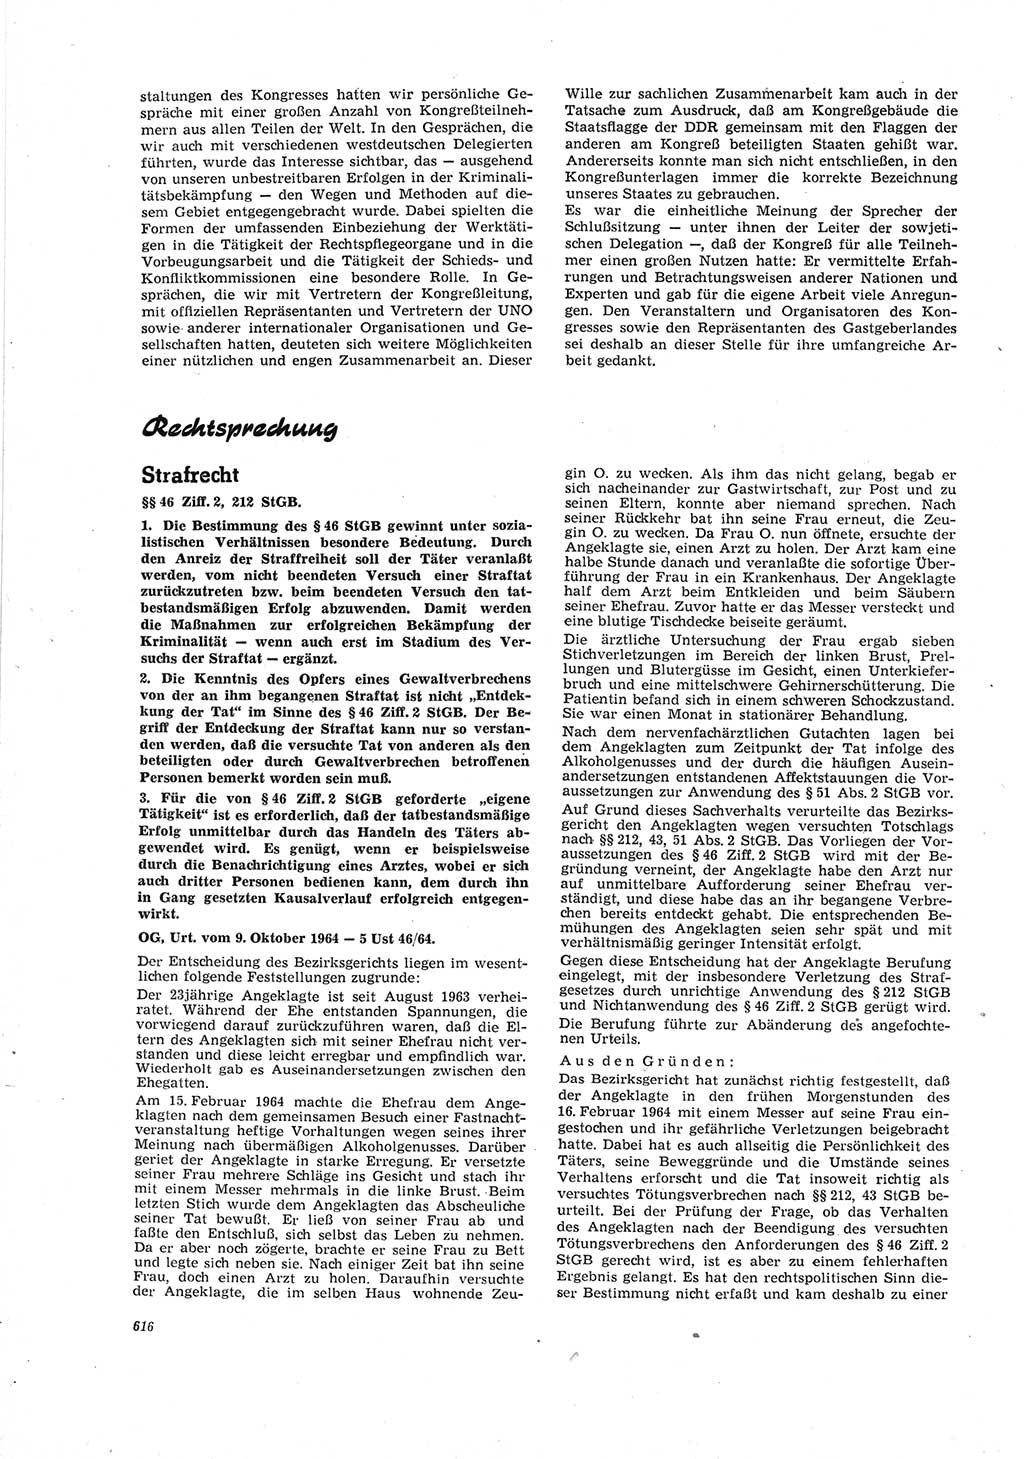 Neue Justiz (NJ), Zeitschrift für Recht und Rechtswissenschaft [Deutsche Demokratische Republik (DDR)], 19. Jahrgang 1965, Seite 616 (NJ DDR 1965, S. 616)